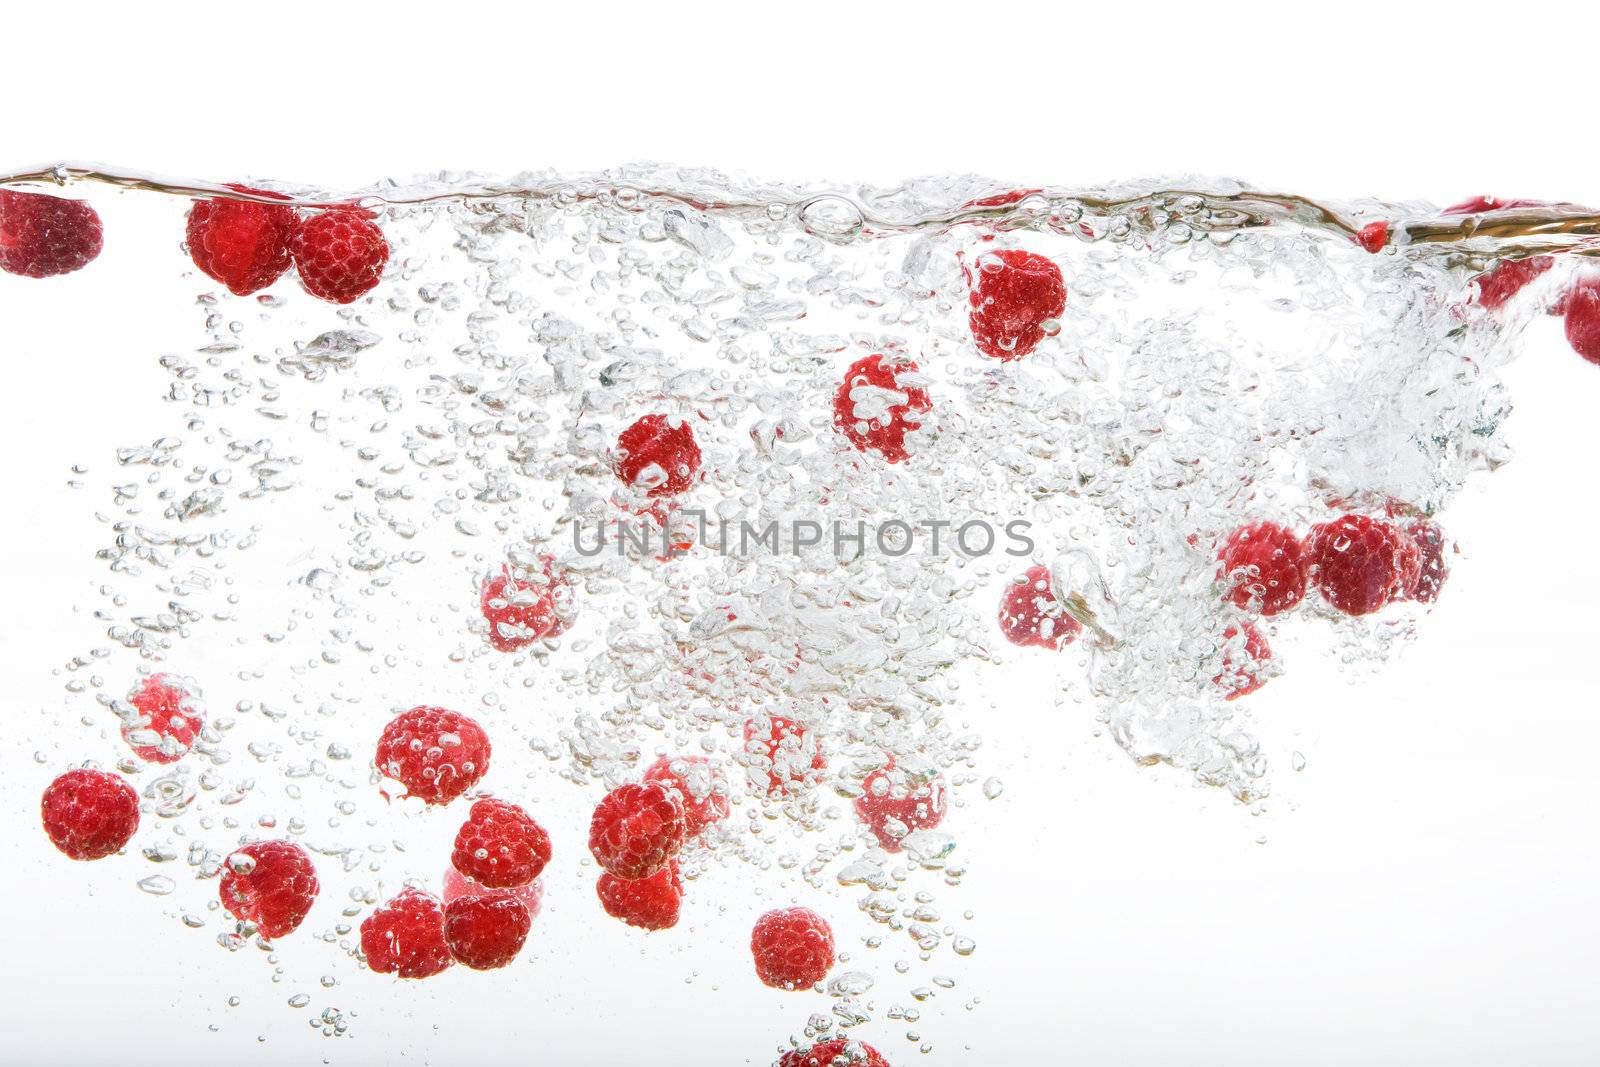 Fresh Raspberries in Water by leaf